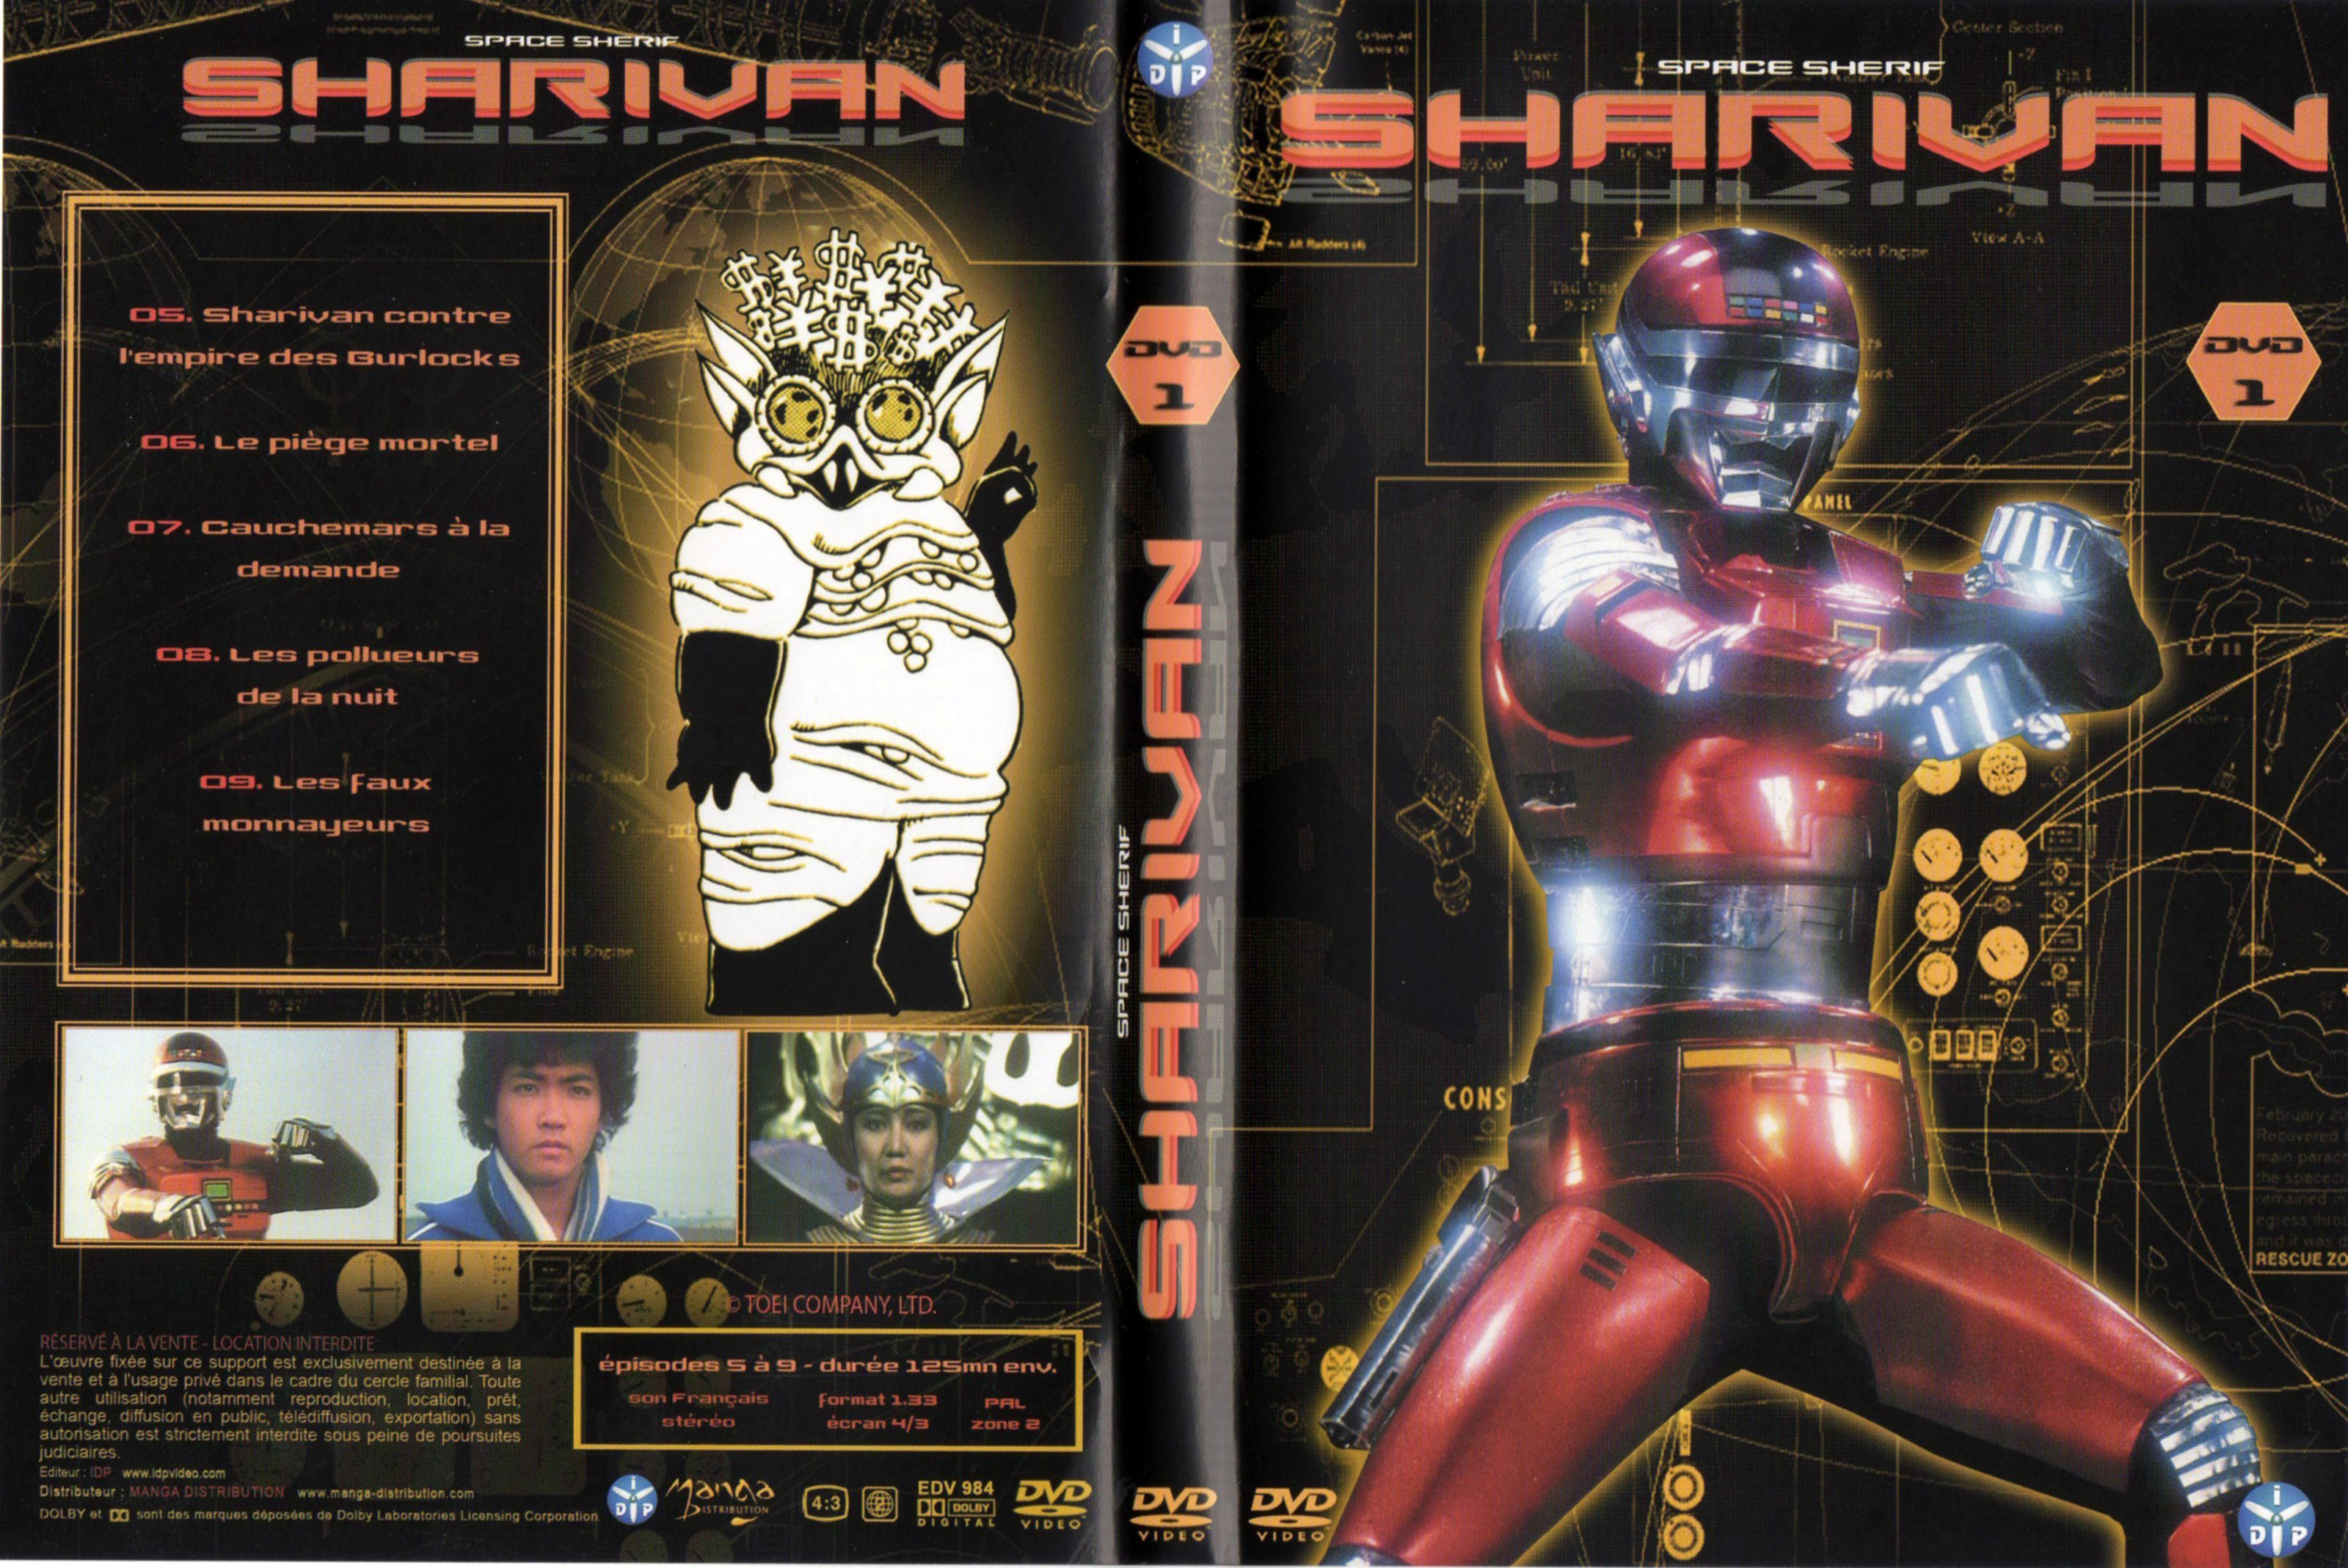 Jaquette DVD Sharivan DVD 01